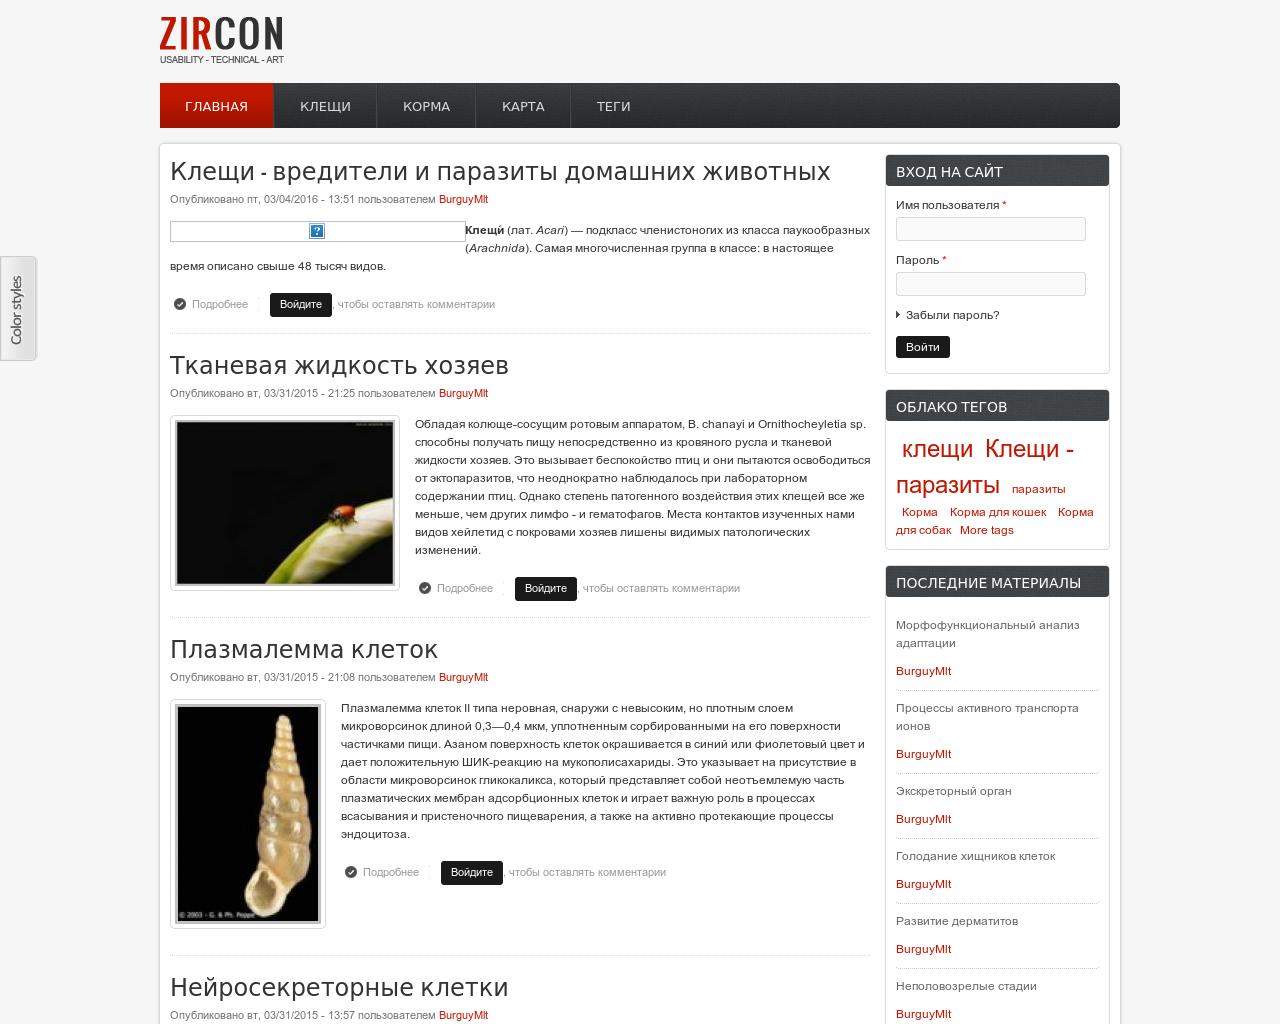 Изображение сайта zoocorm.ru в разрешении 1280x1024